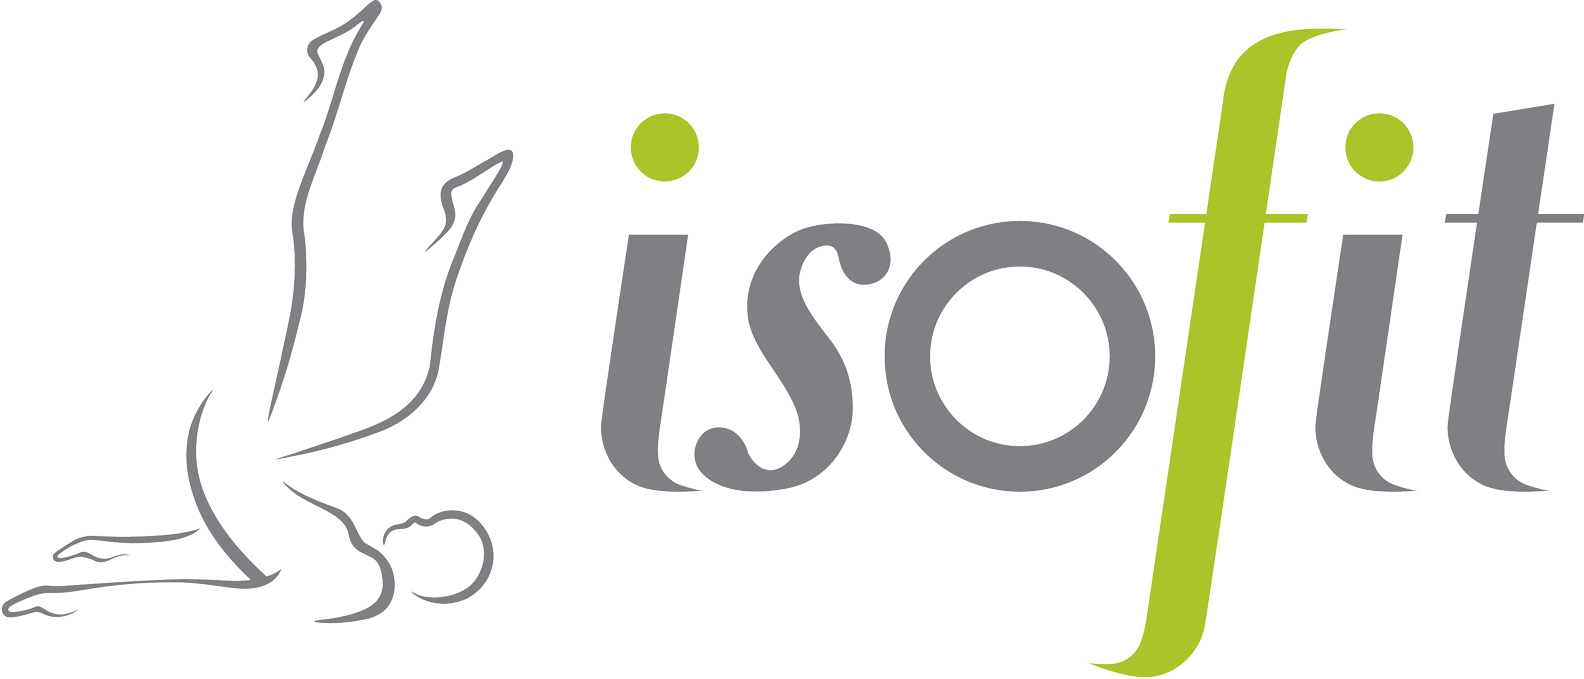 Isofit Logo